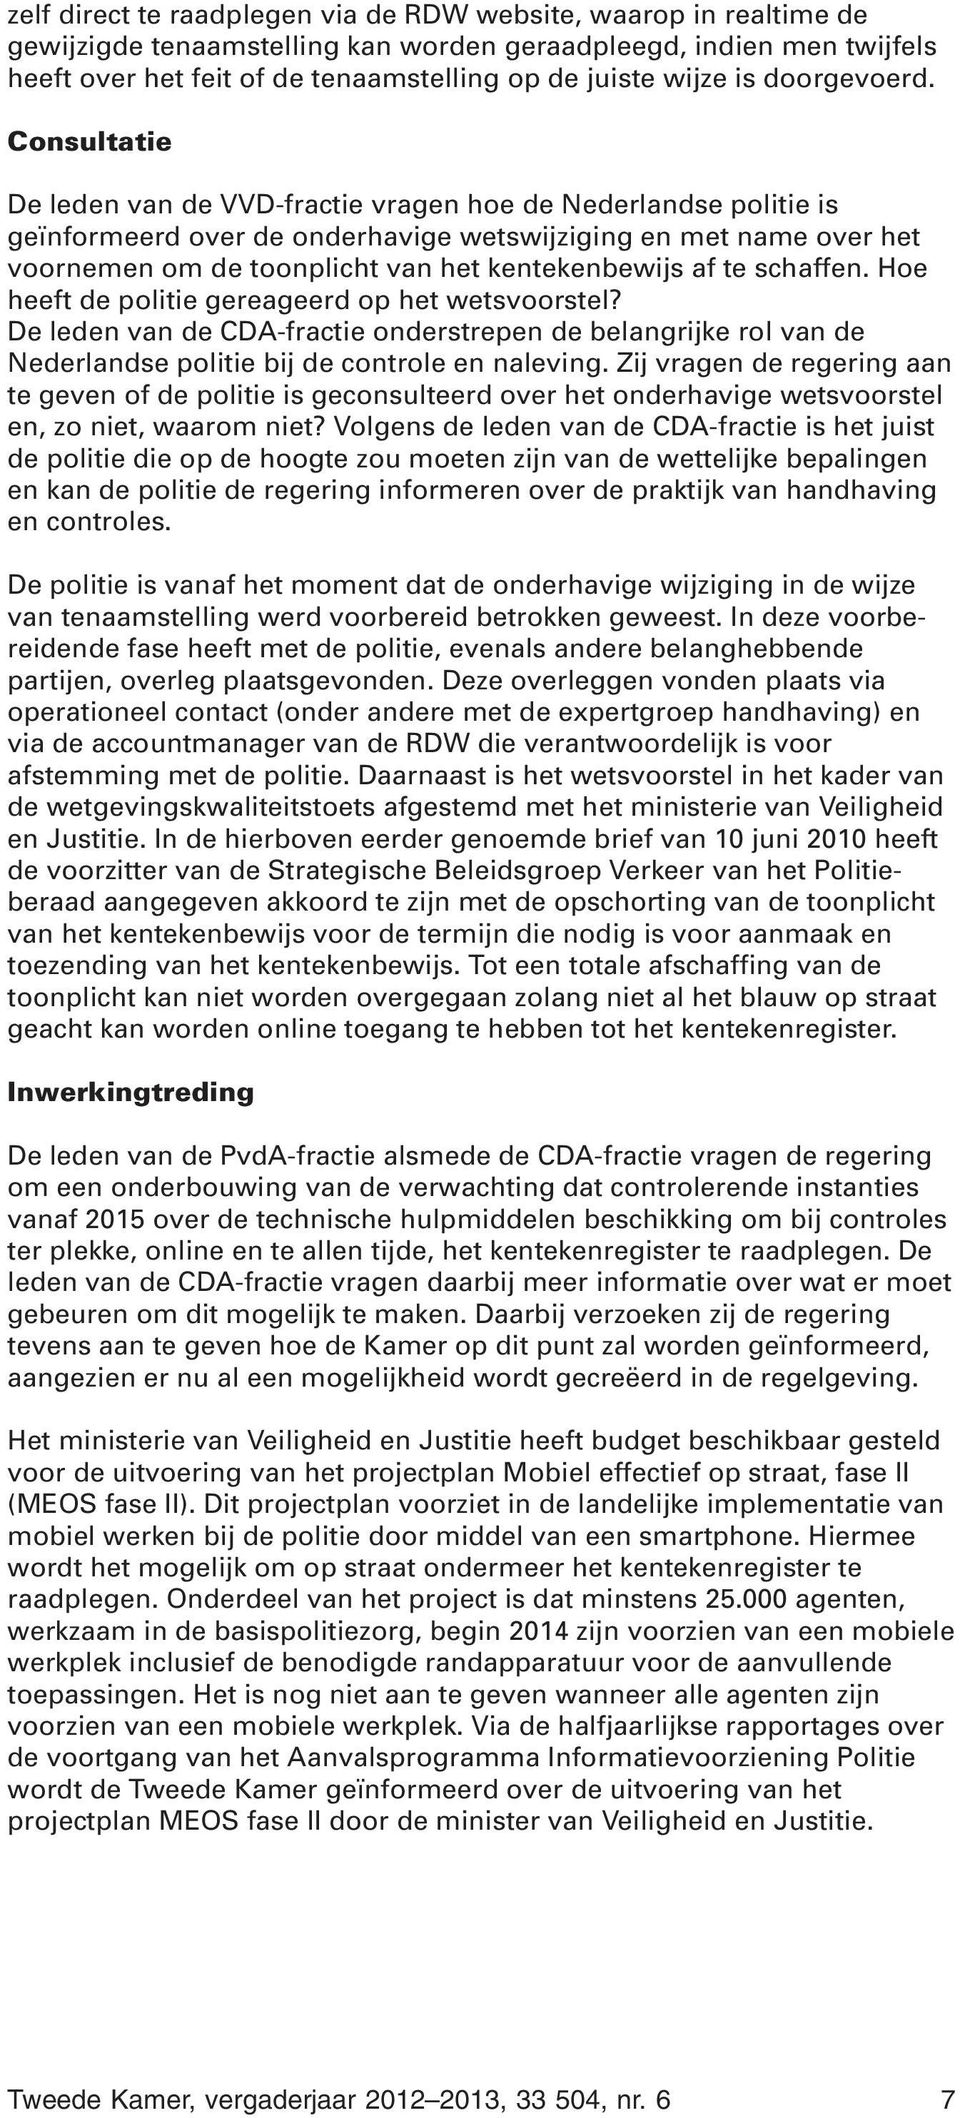 Consultatie De leden van de VVD-fractie vragen hoe de Nederlandse politie is geïnformeerd over de onderhavige wetswijziging en met name over het voornemen om de toonplicht van het kentekenbewijs af